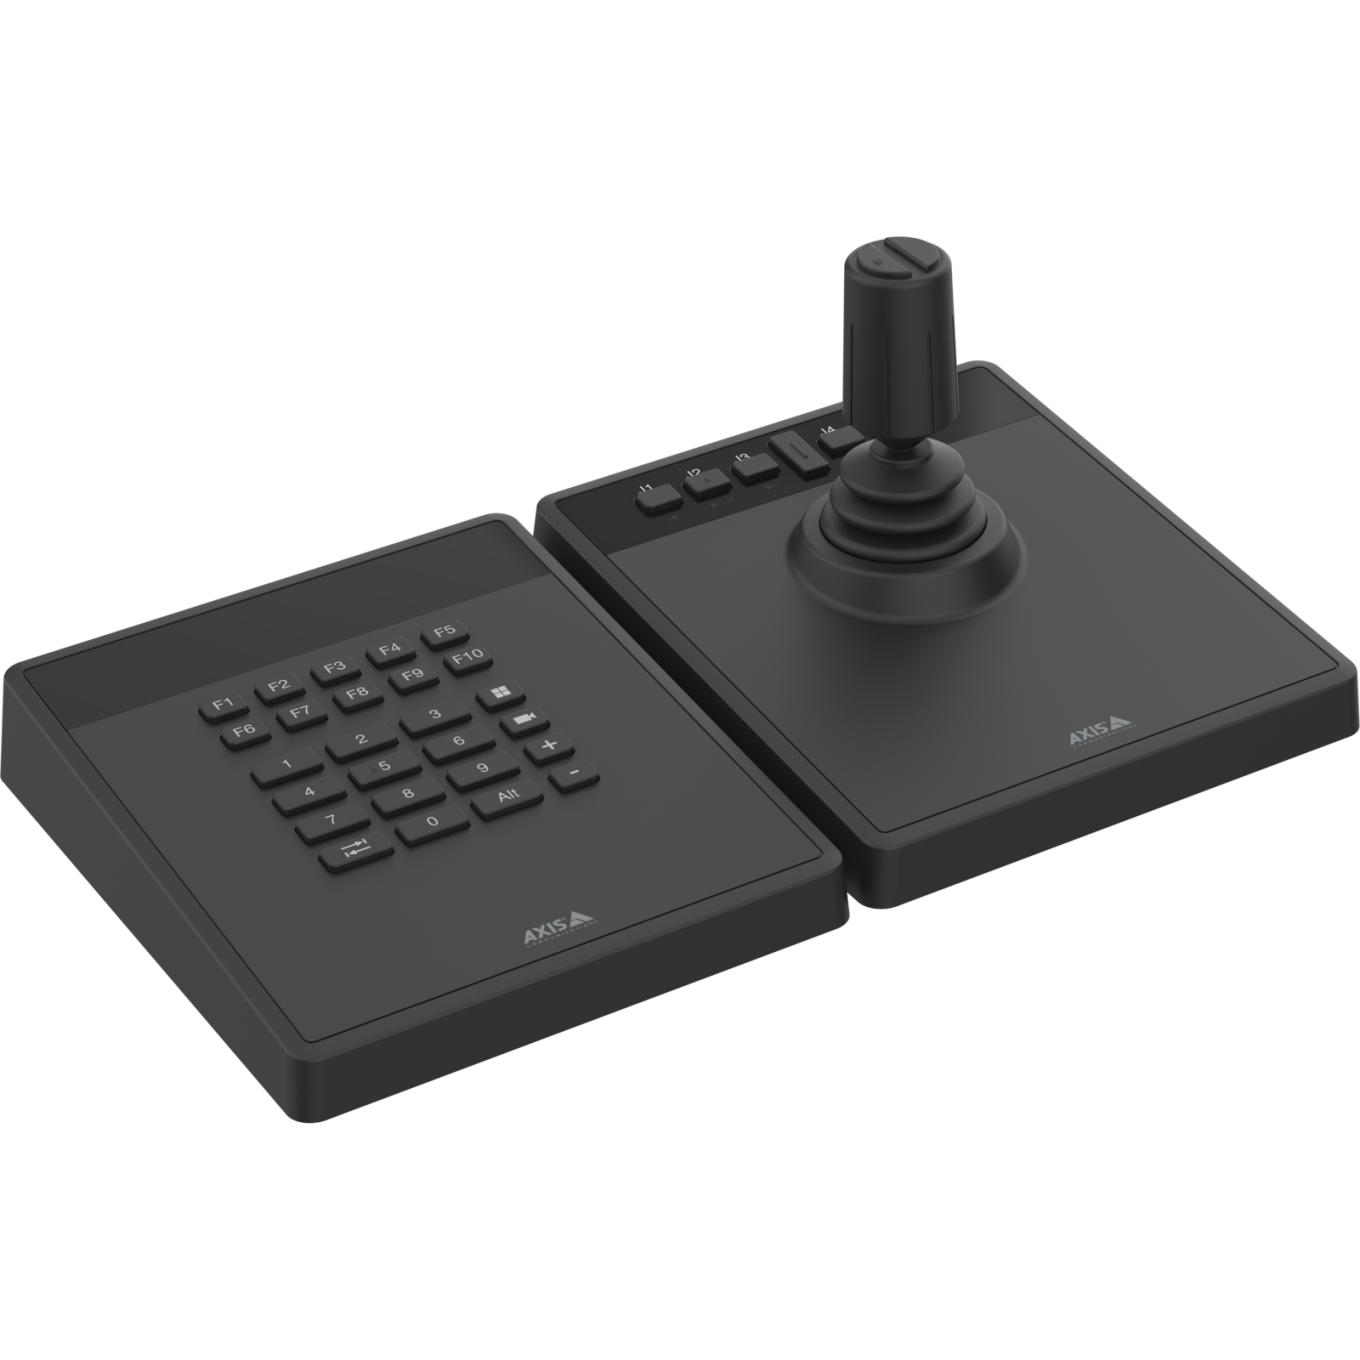 AXIS TU9001 Control Board für professionelle Kamera- und Video Management, Tastatur und Joystick nebeneinander, kein Text auf LCD-Display